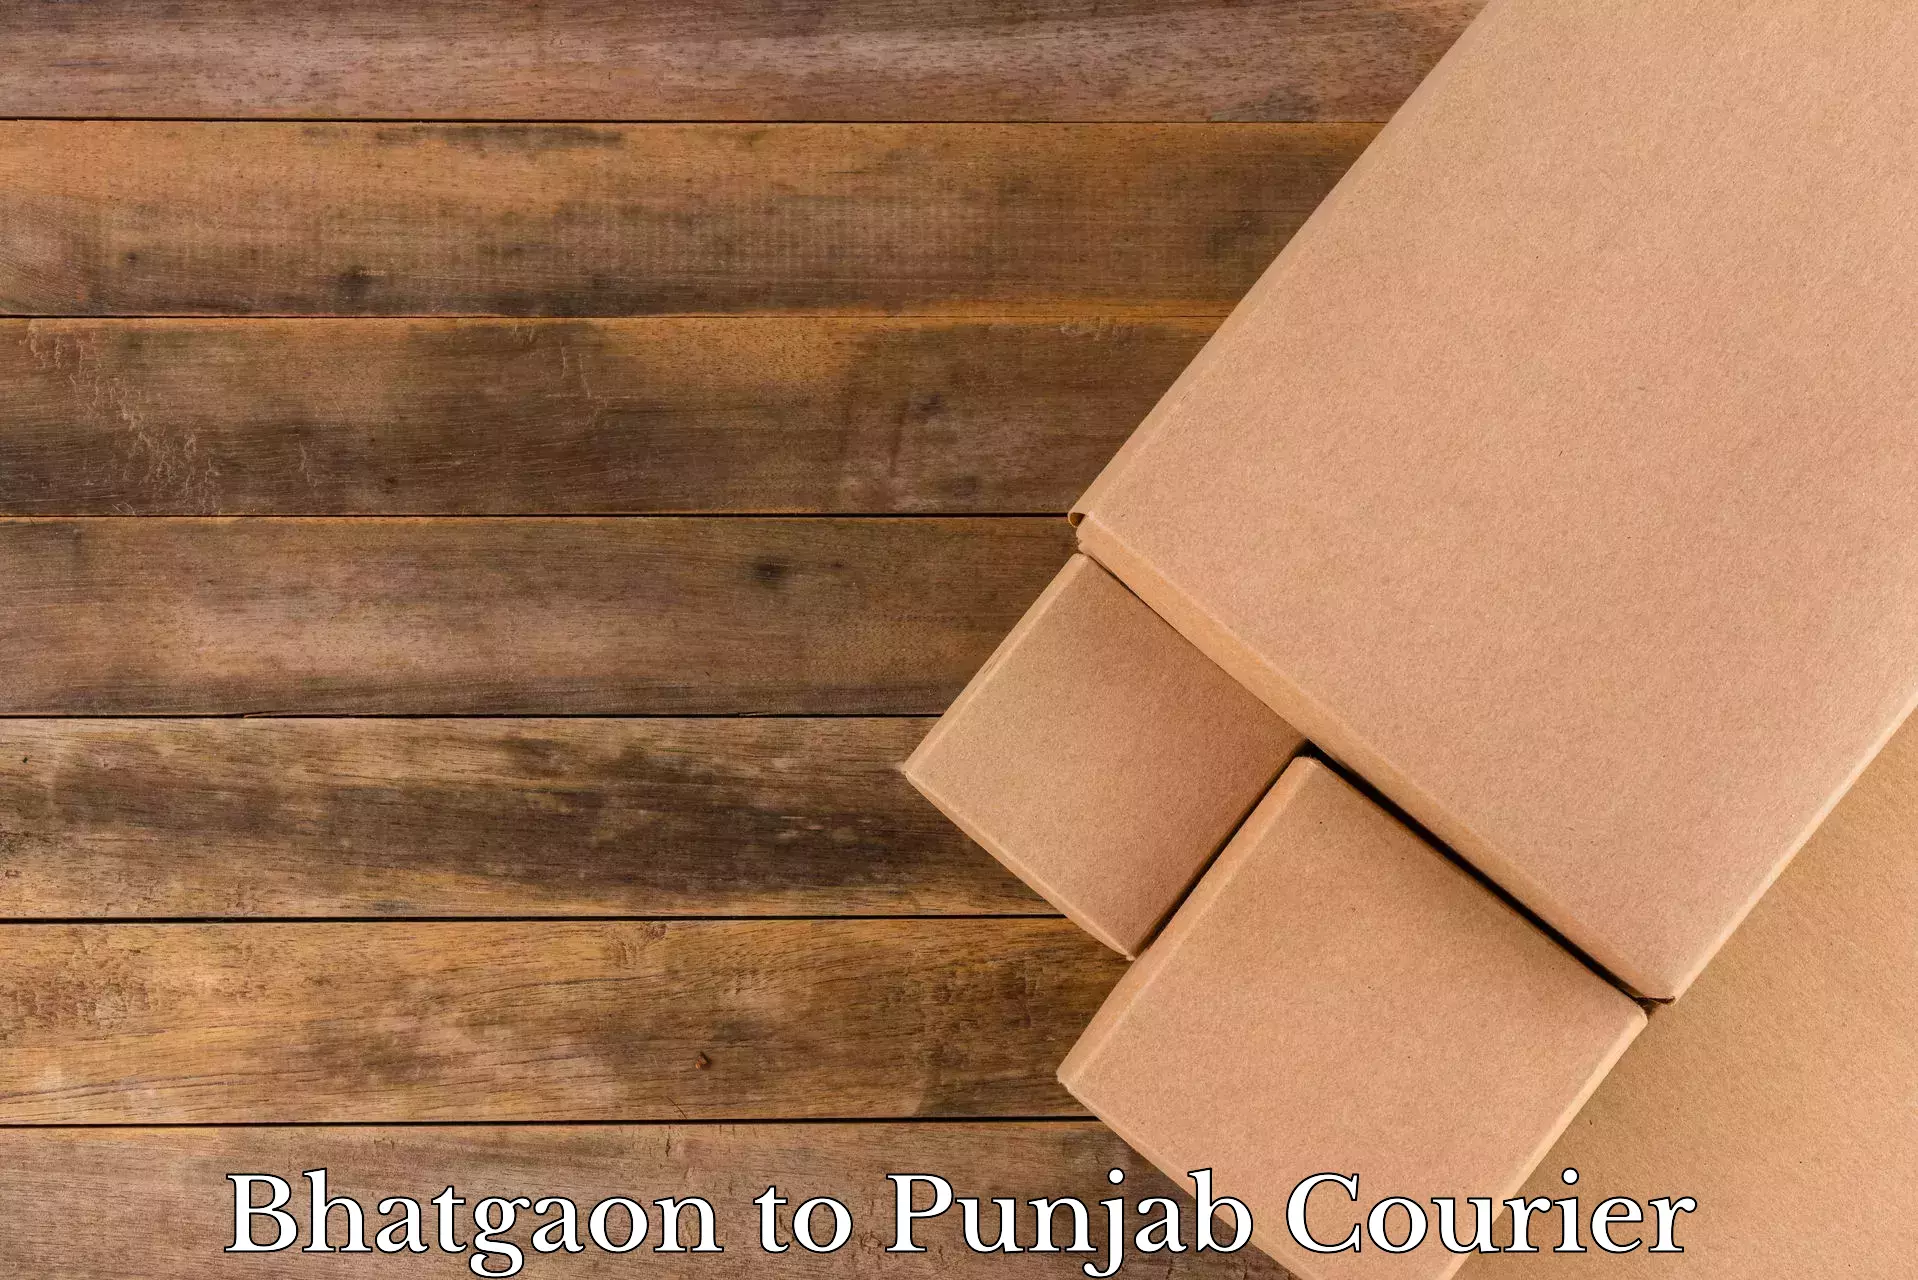 Stress-free household moving in Bhatgaon to Punjab